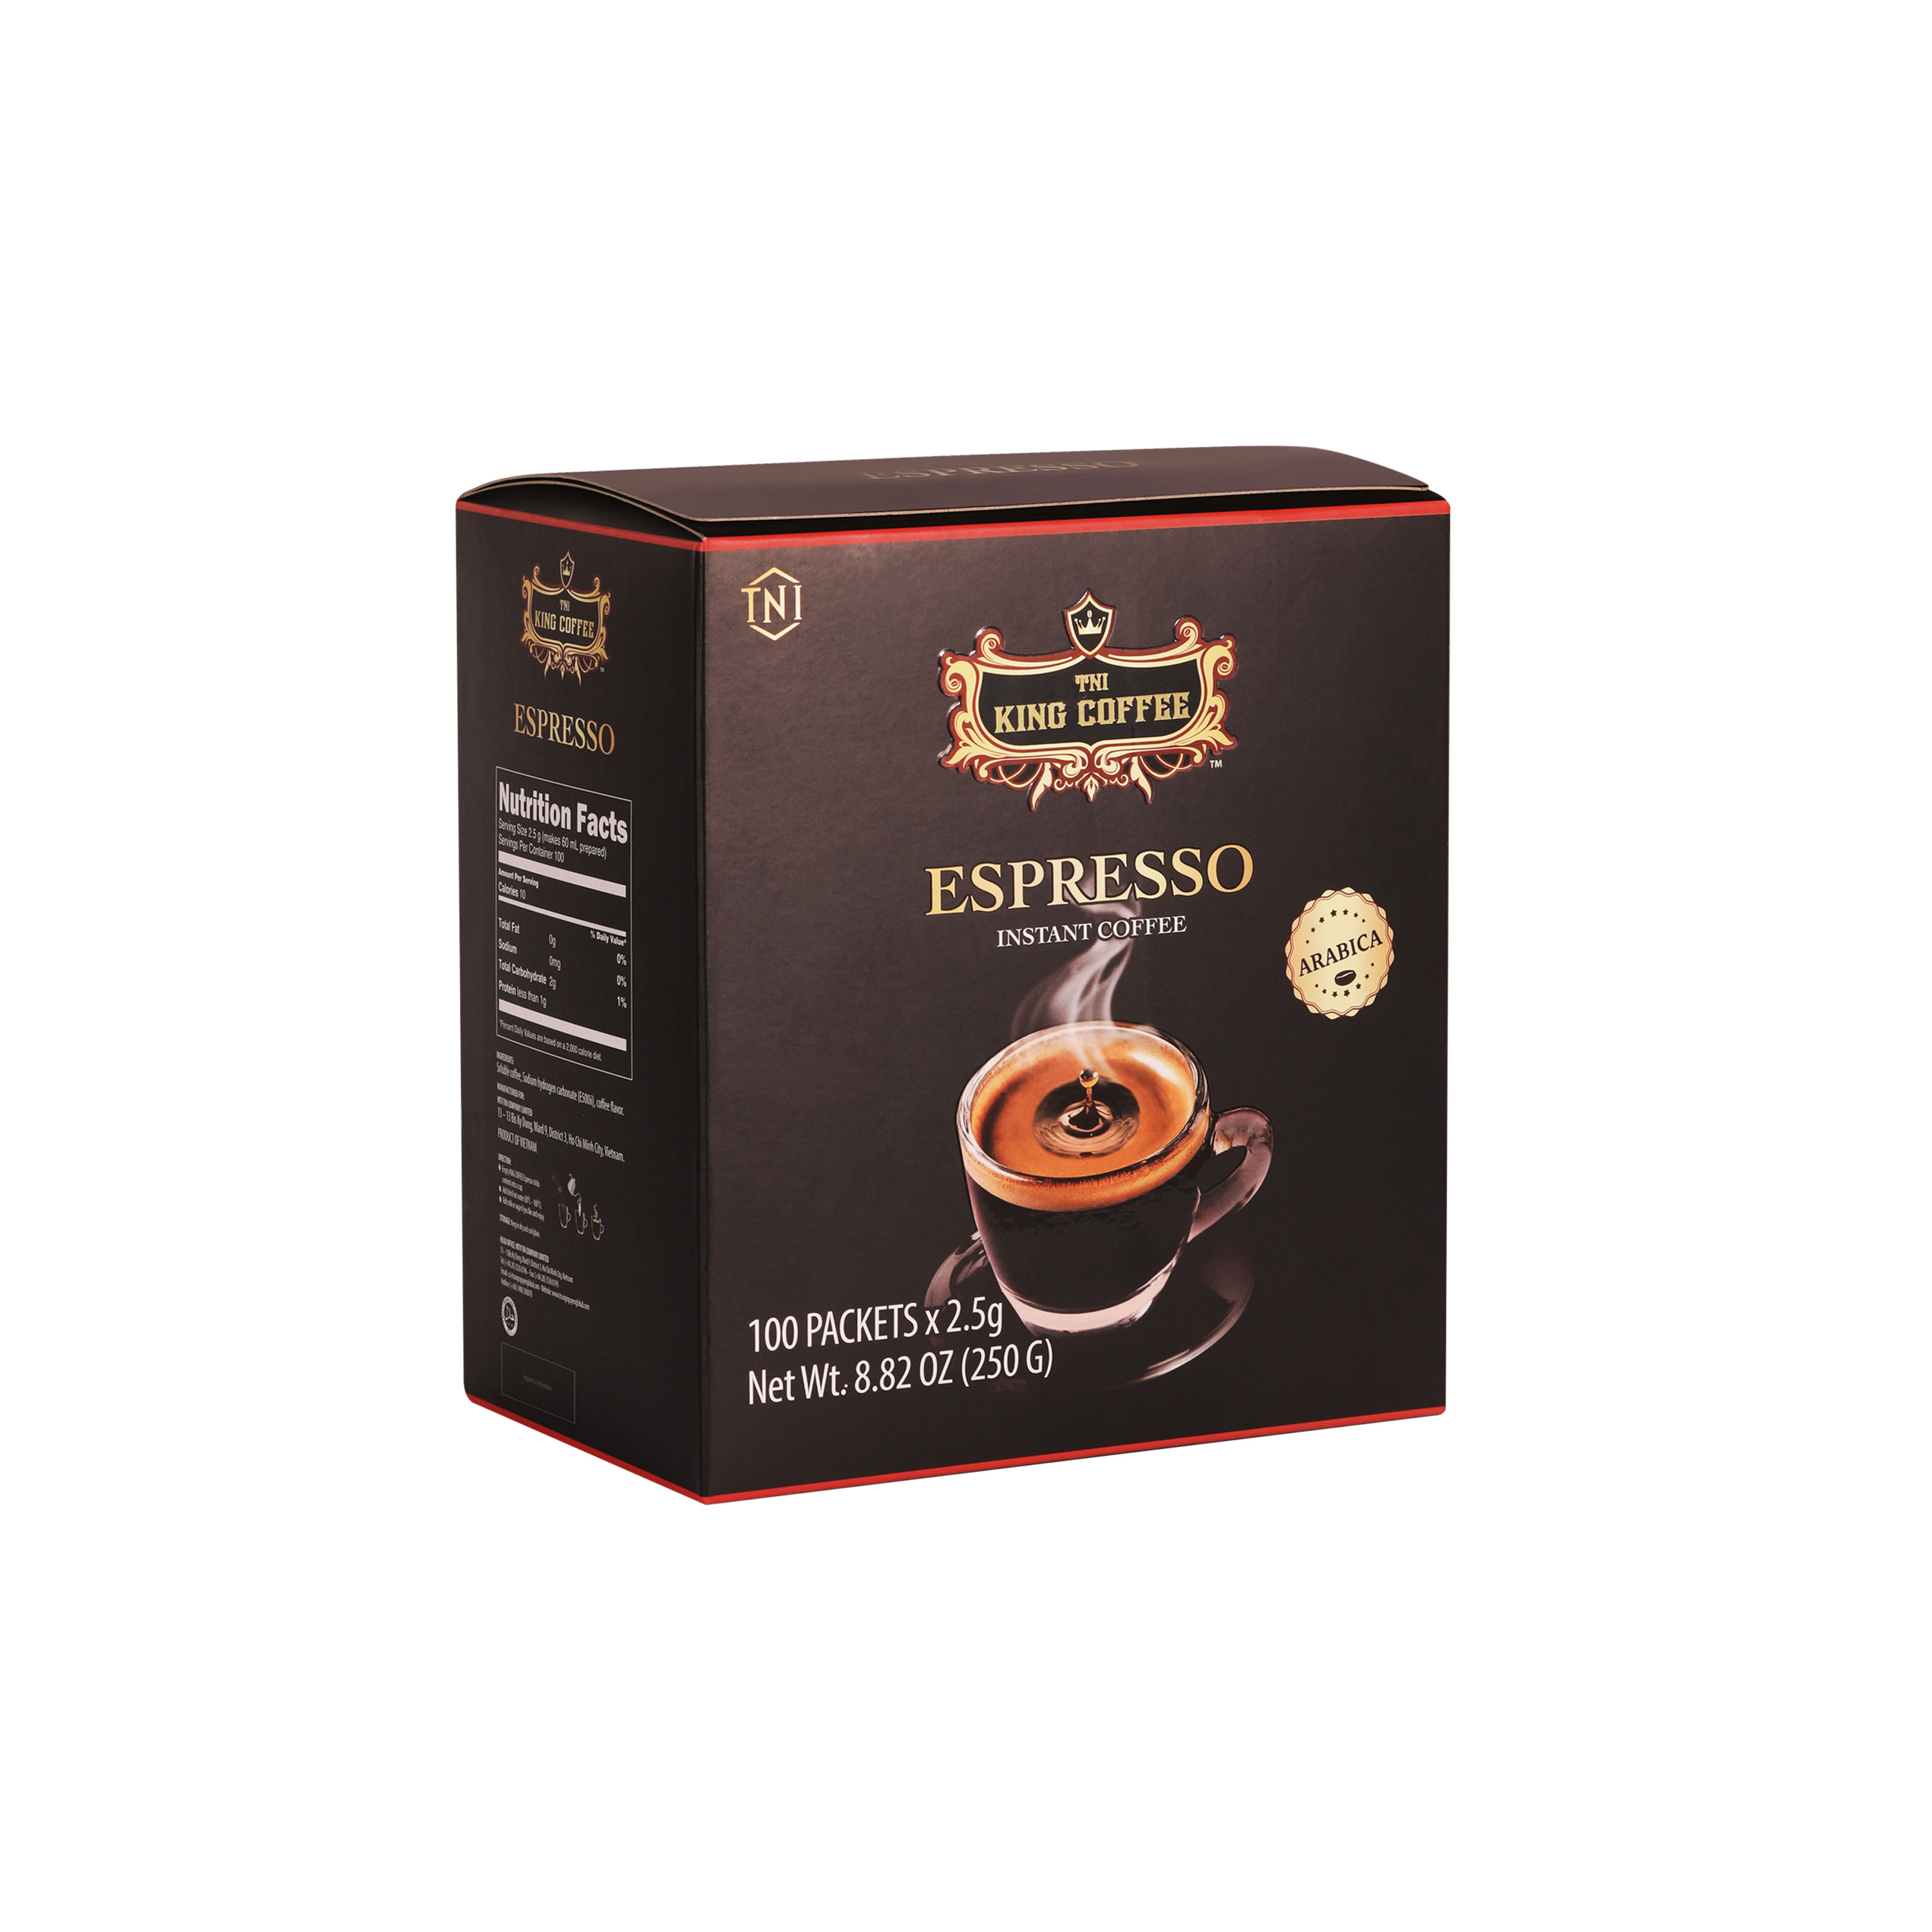 Cà Phê Đen Hòa Tan Espresso KING COFFEE - Hộp 100 gói x 2.5g - Arabica café hòa tan đậm hương vị cà phê Ý